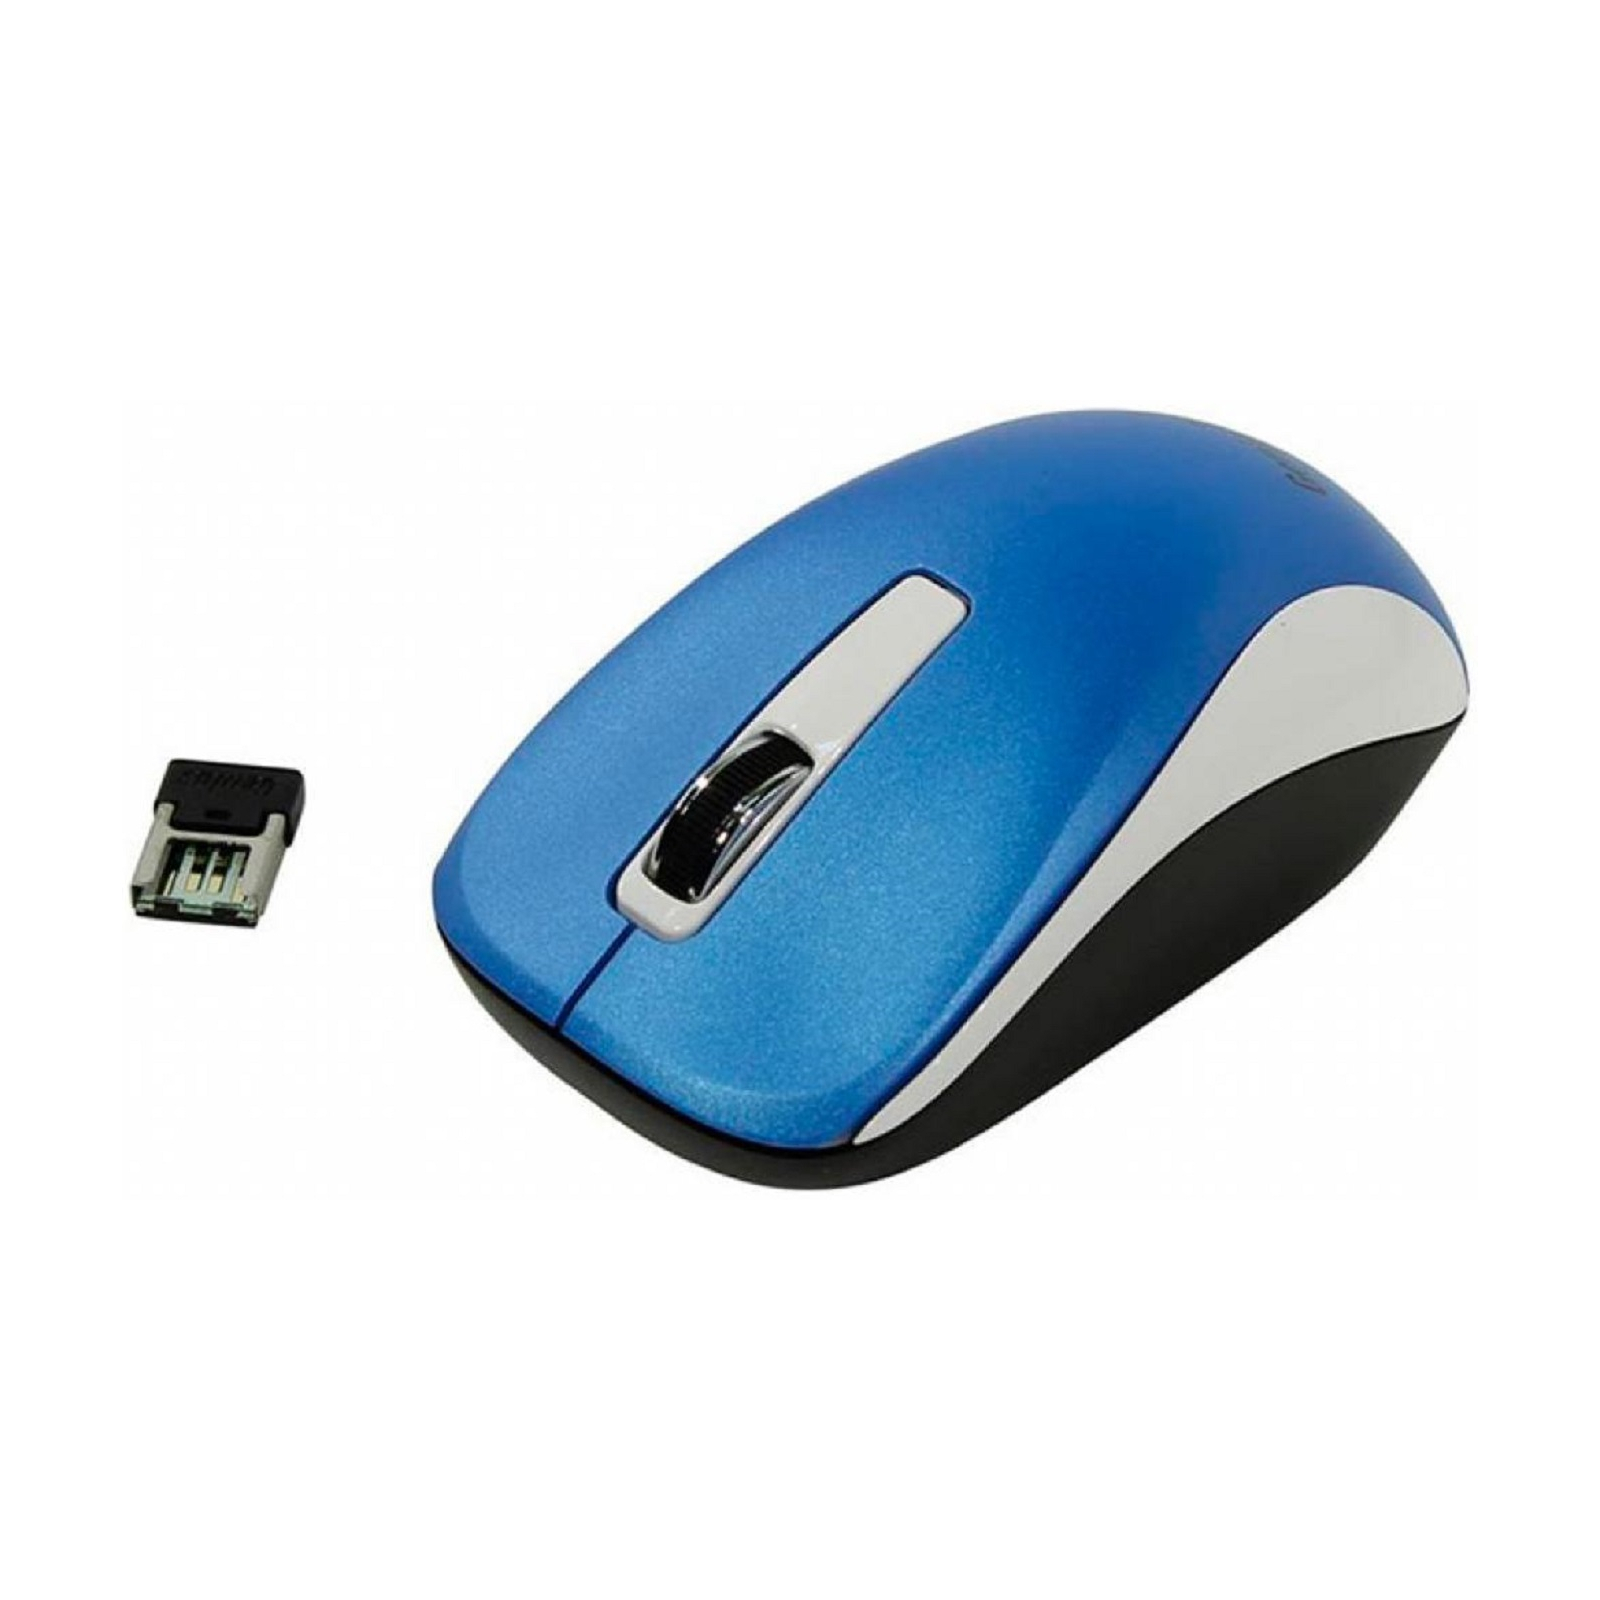 Мышка Genius NX-7010 Wireless Blue (31030018400) изображение 3